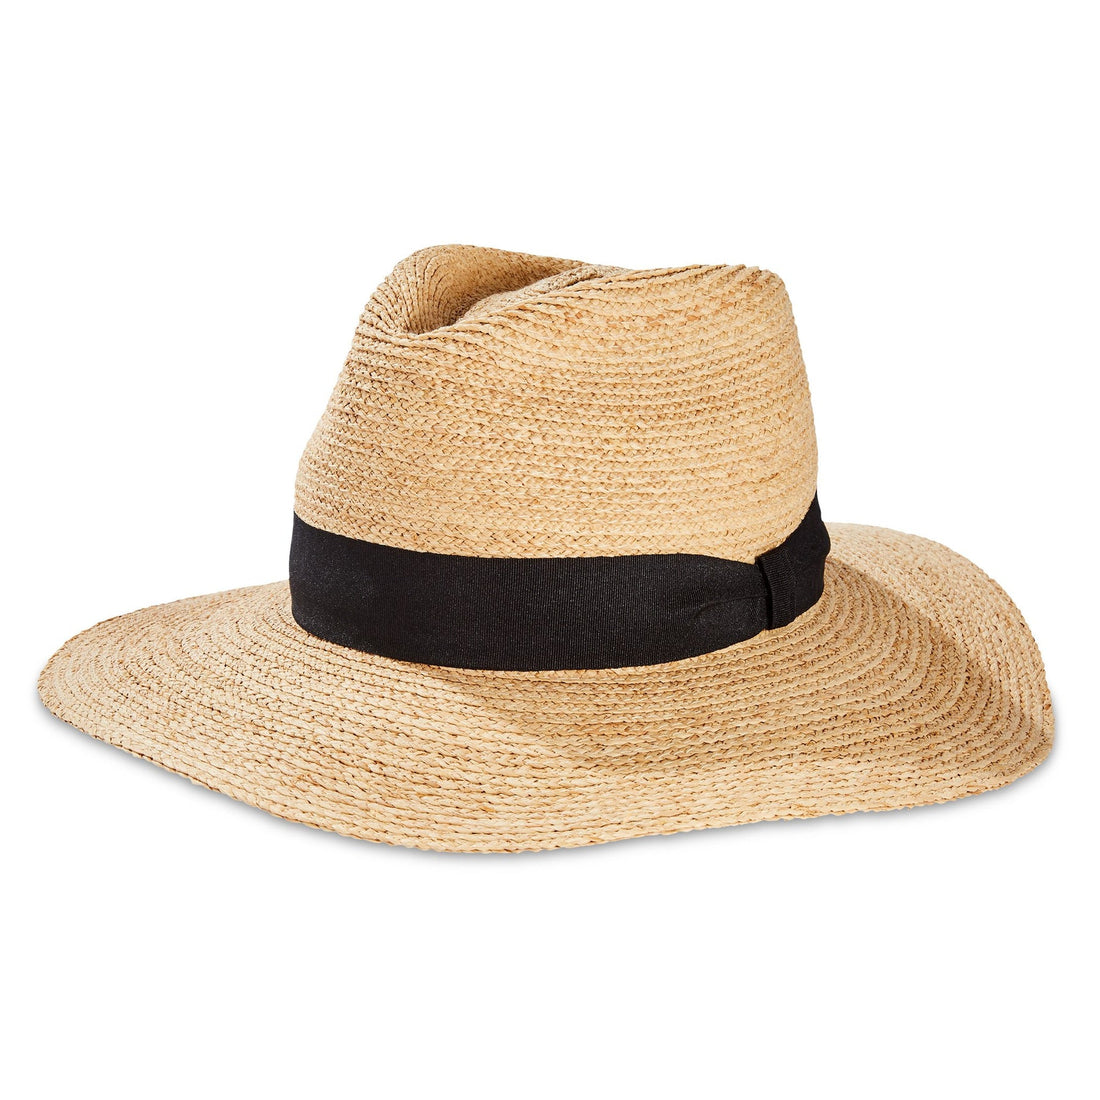 Tilley Women's Panama Wide Brim Hat – OutdoorsInc.com